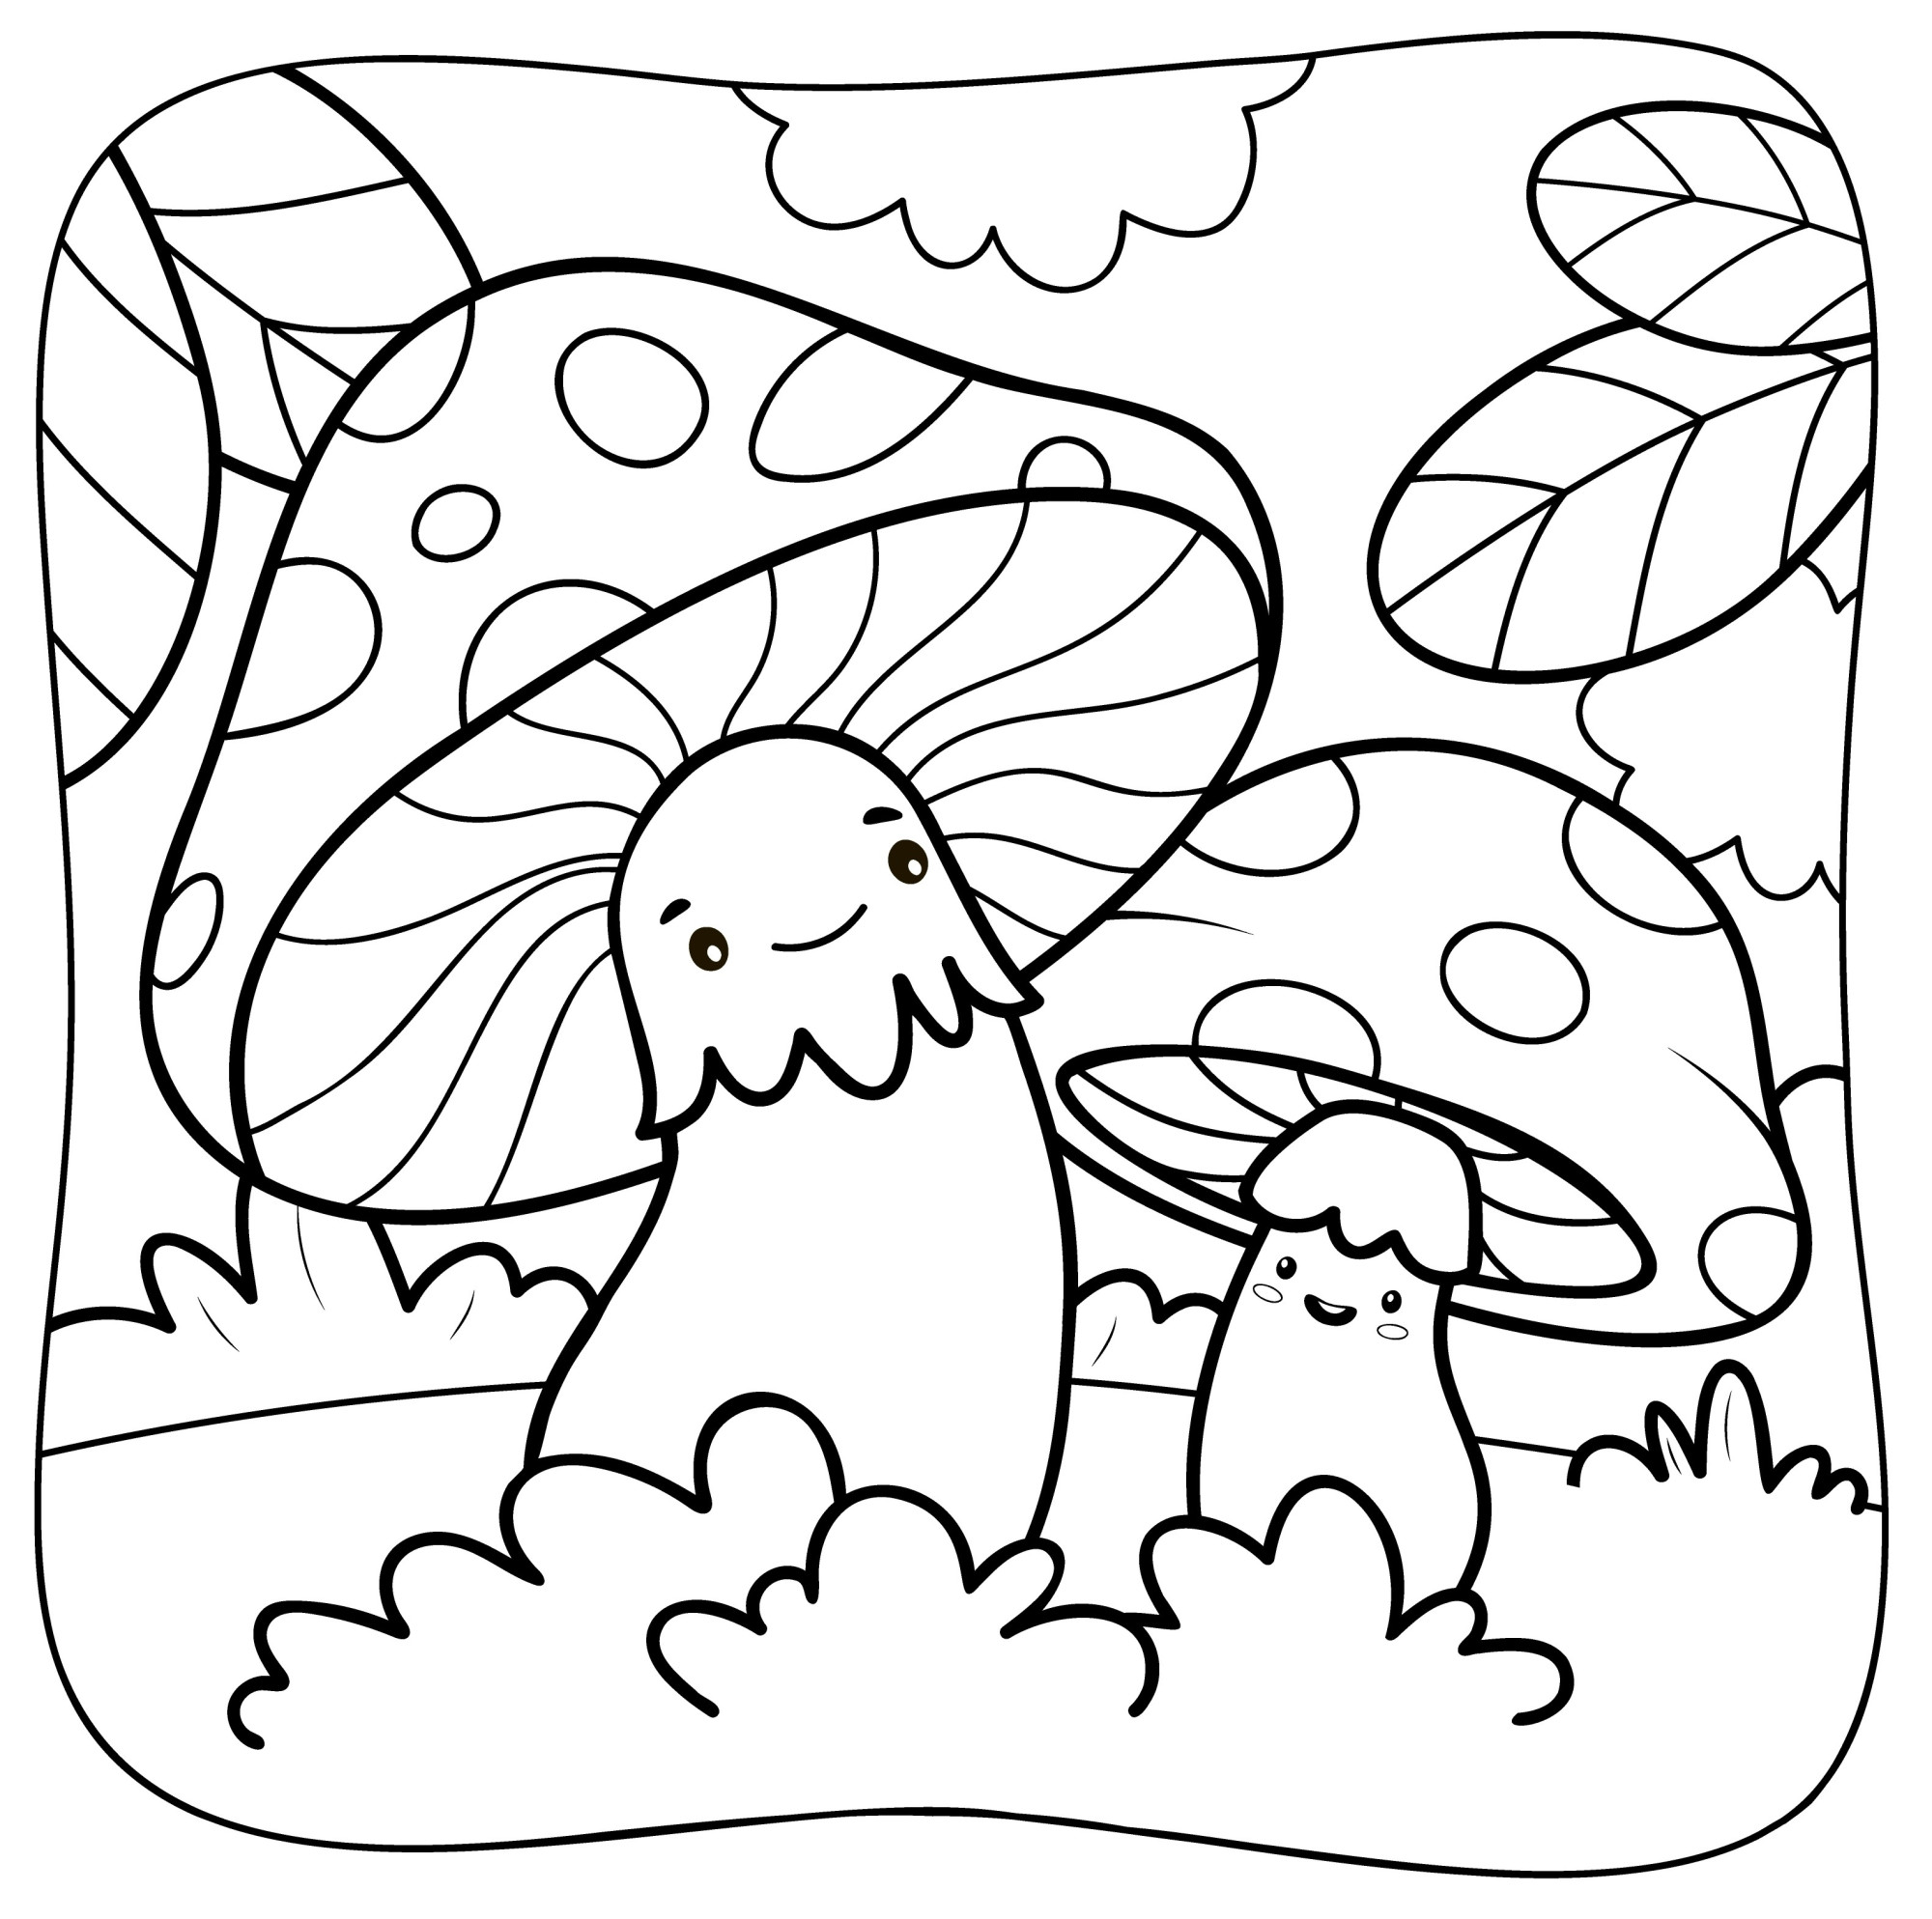 Раскраска для детей: грибы с глазками на природе